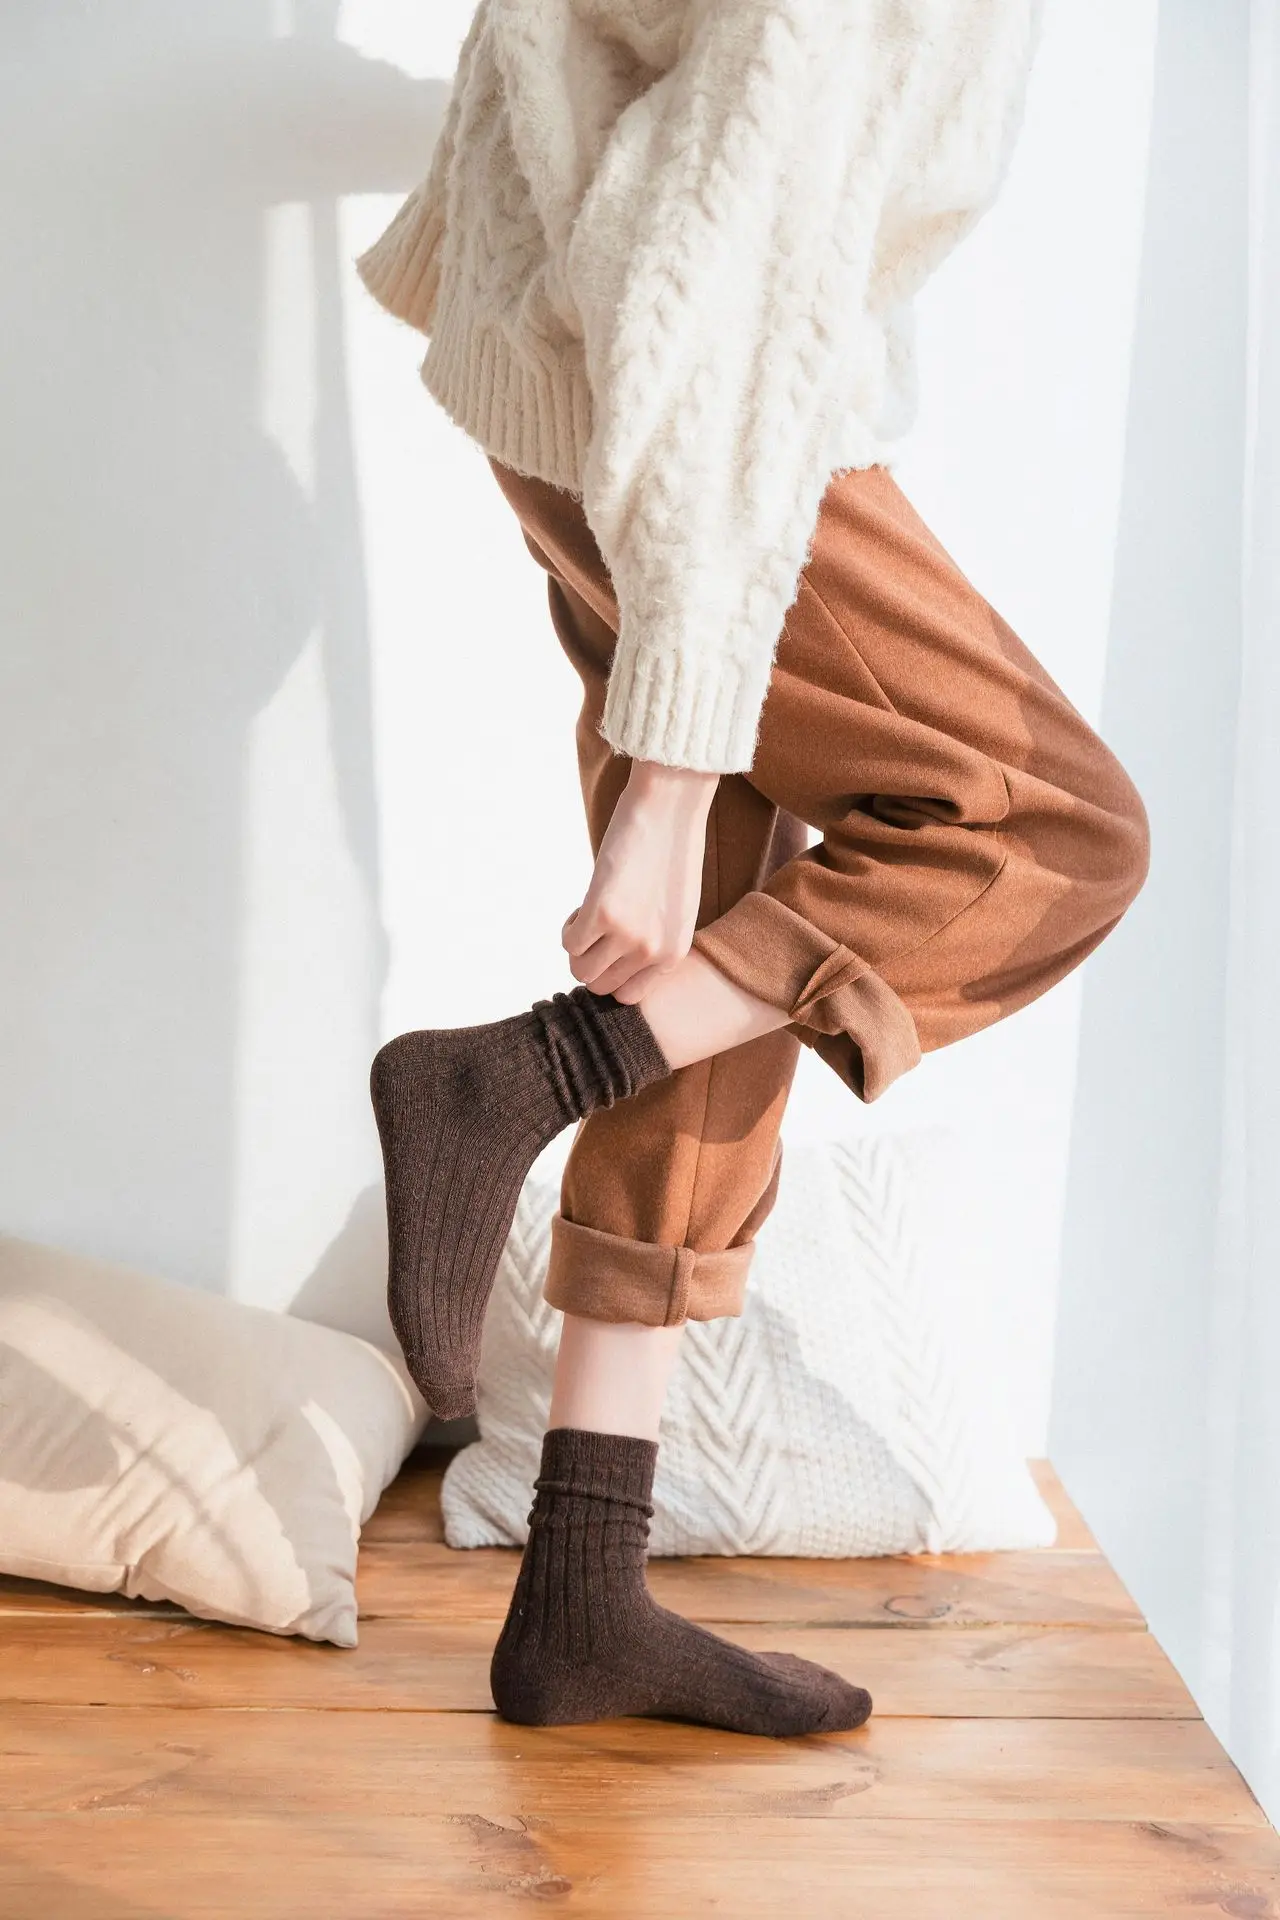 Бренд GREENYU, новая модель, хлопок, сплошной цвет, MoreThick, женские носки, зимние теплые дышащие хлопковые носки, впитывающие пот носки для женщин